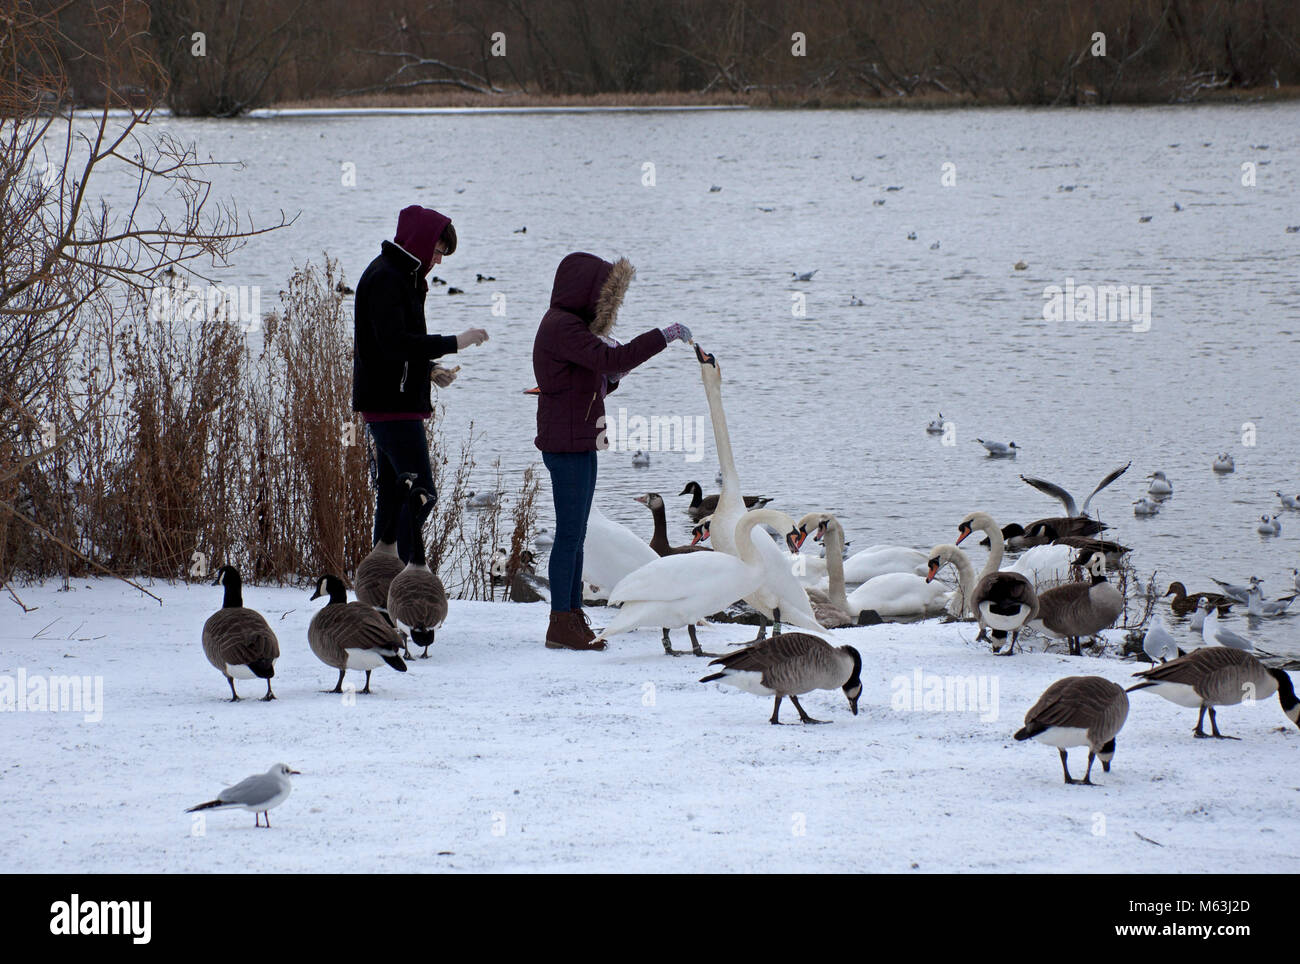 28 février 2018, Édimbourg, Écosse Holyrood Park. Les canards et cygnes oiseaux affamés se rassemblent pour se nourrir en les lochs pendant une accalmie entre les tempêtes de neige Banque D'Images